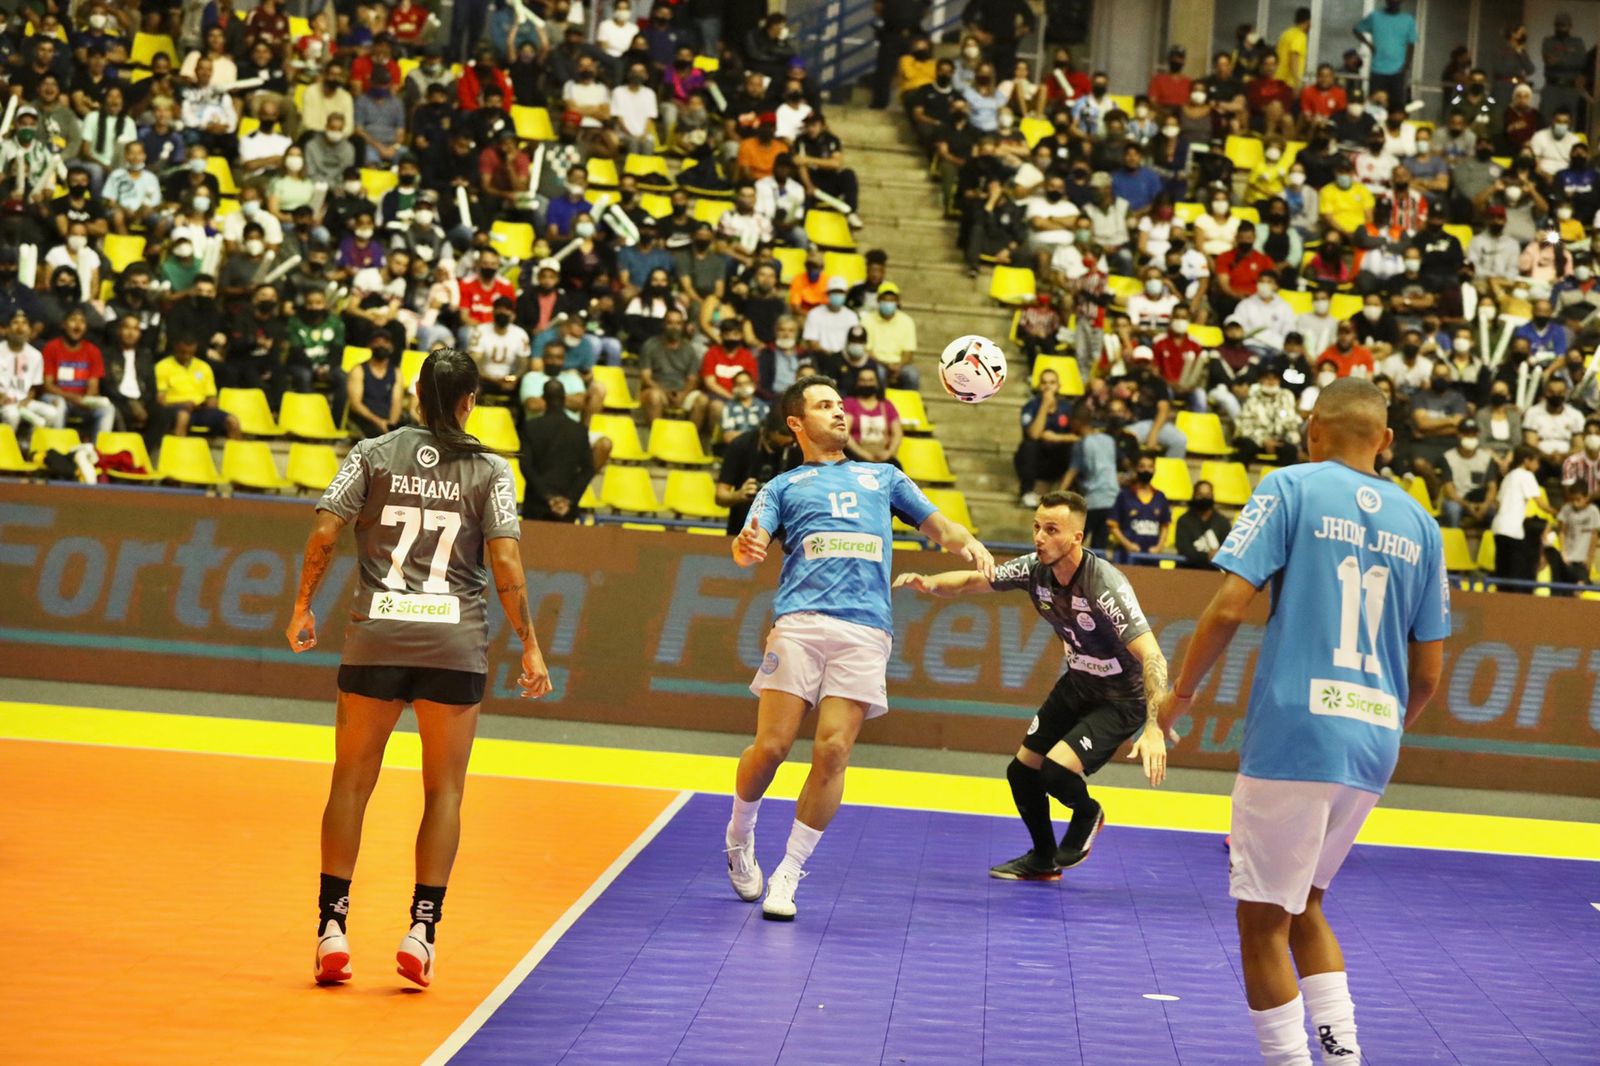 Você conhece os Reis do Futsal? Falcão e Amandinha são Altipisos!